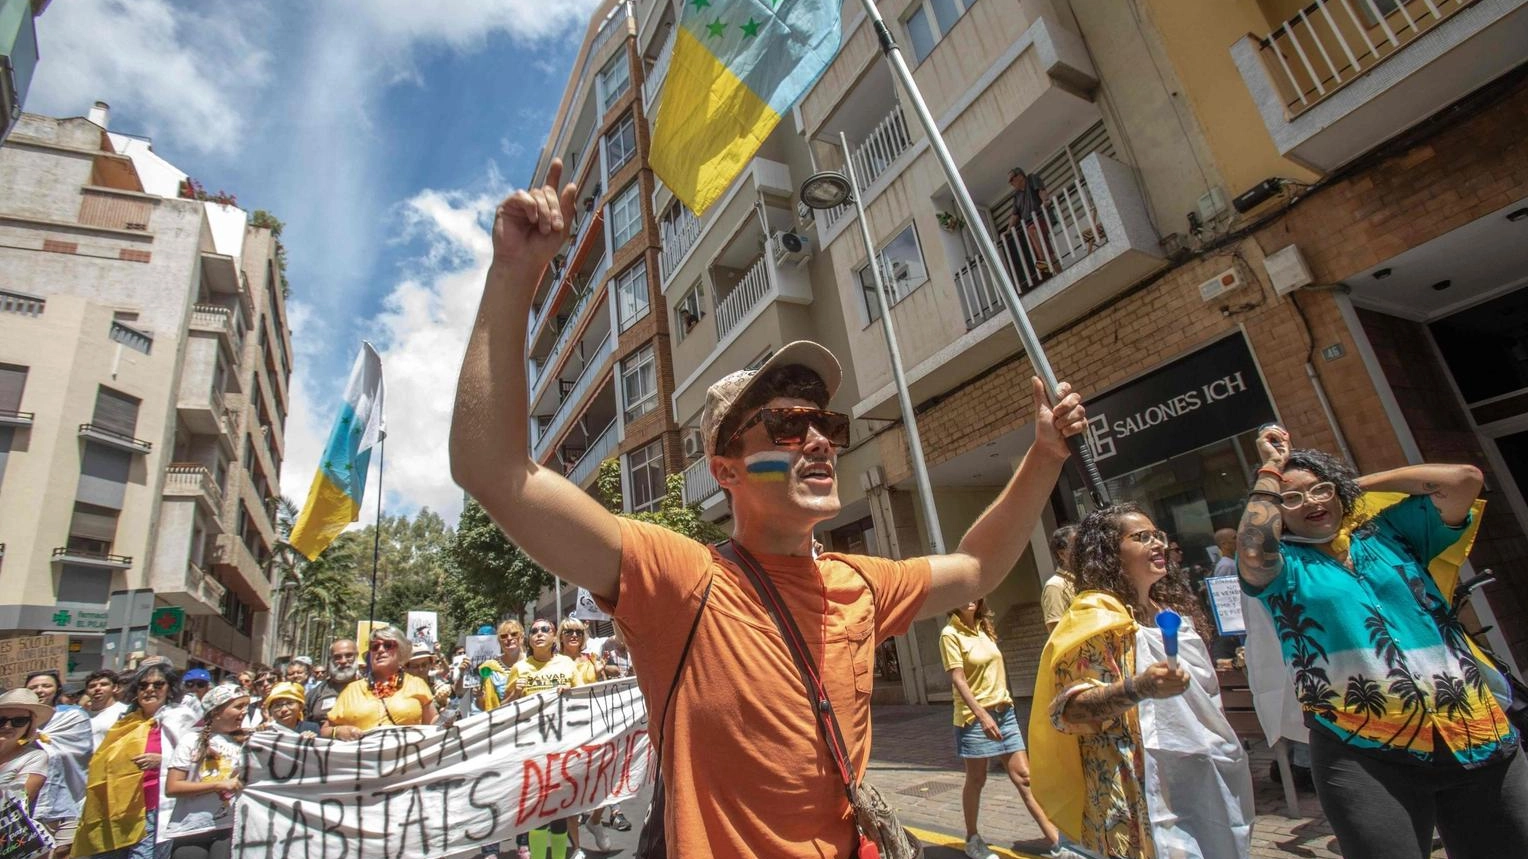 Decine di migliaia di persone alle Canarie protestano contro il turismo di massa e le sue conseguenze ambientali e sociali, chiedendo un limite allo sviluppo.